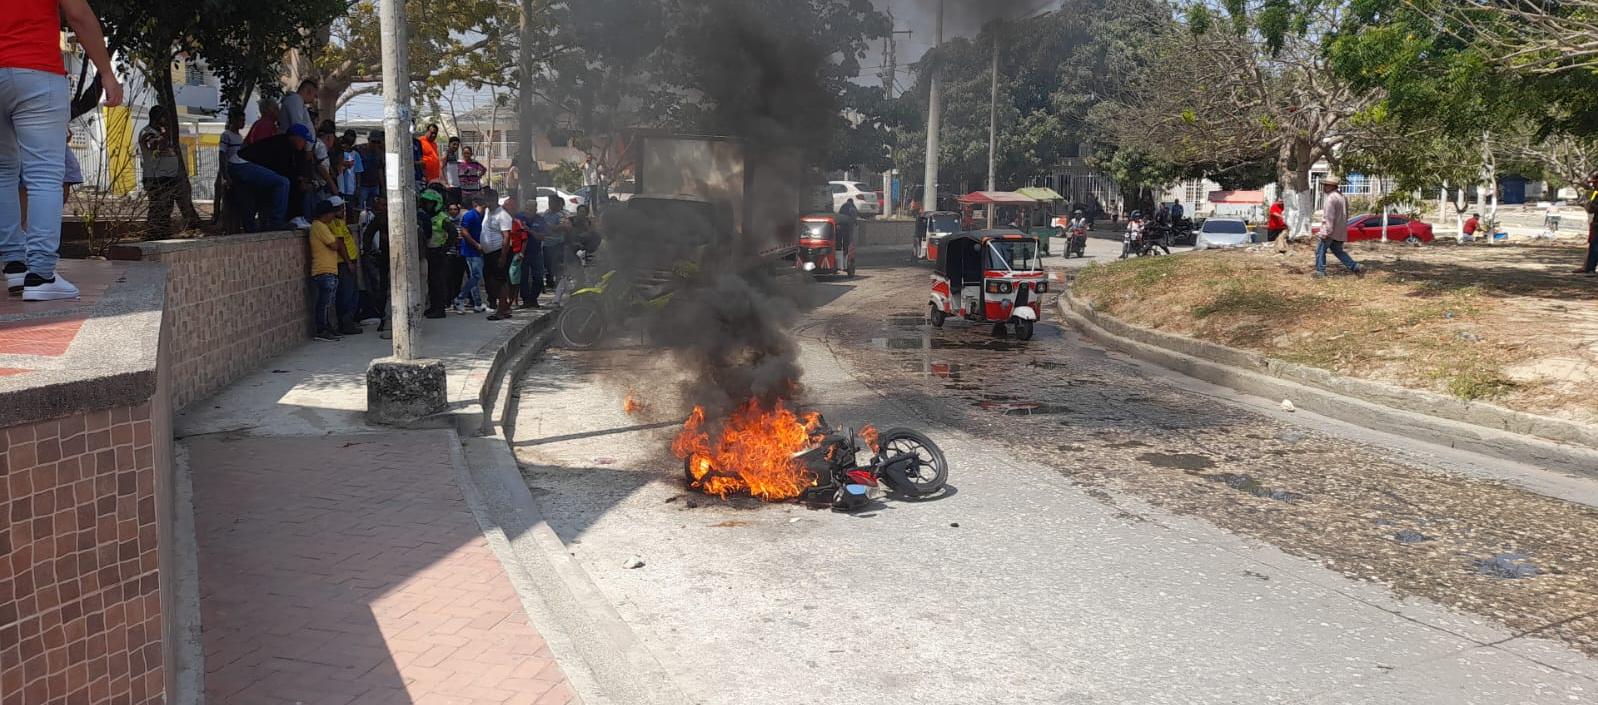 A presunto ladrón le quemaron su moto en La Arboleda